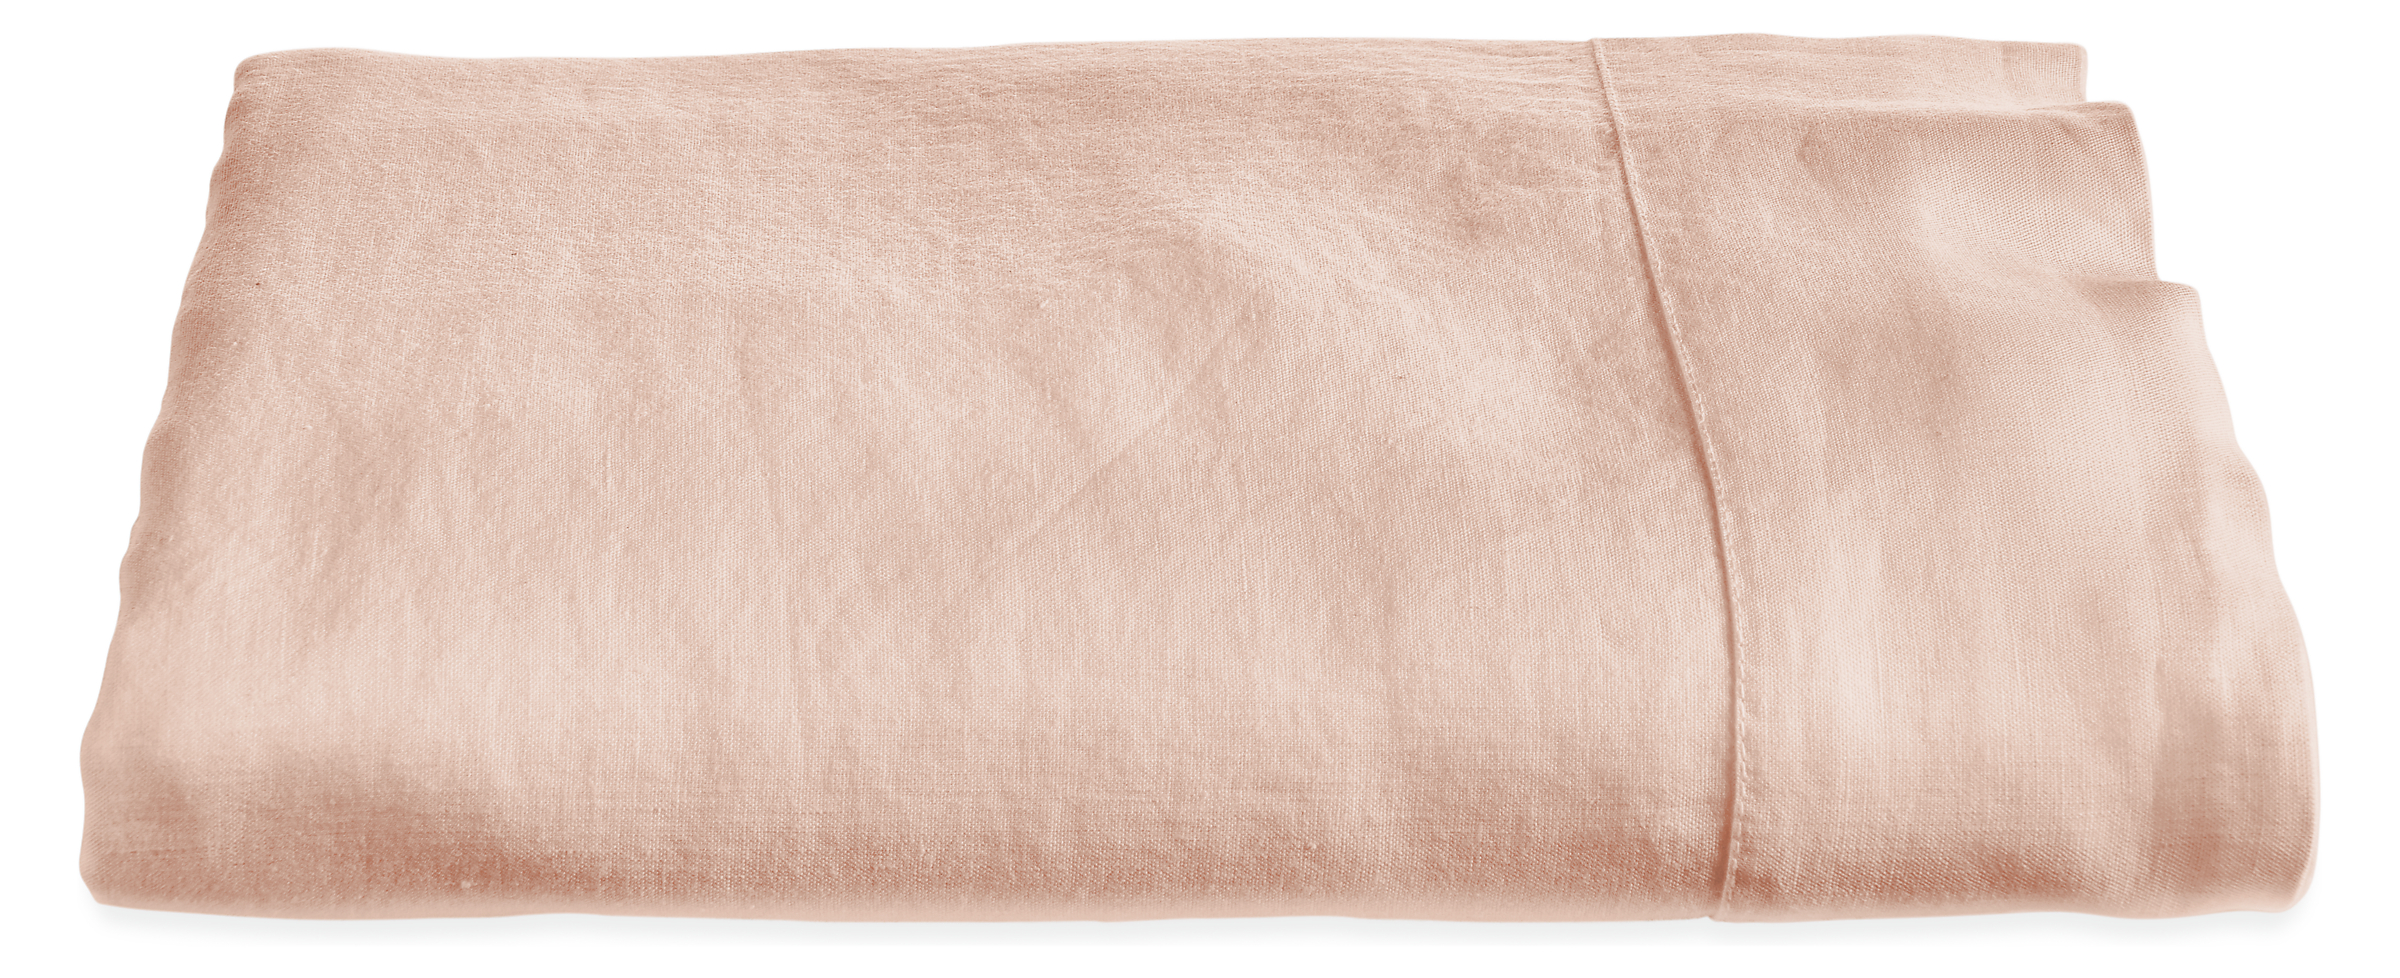 Relaxed Linen King Flat Sheet